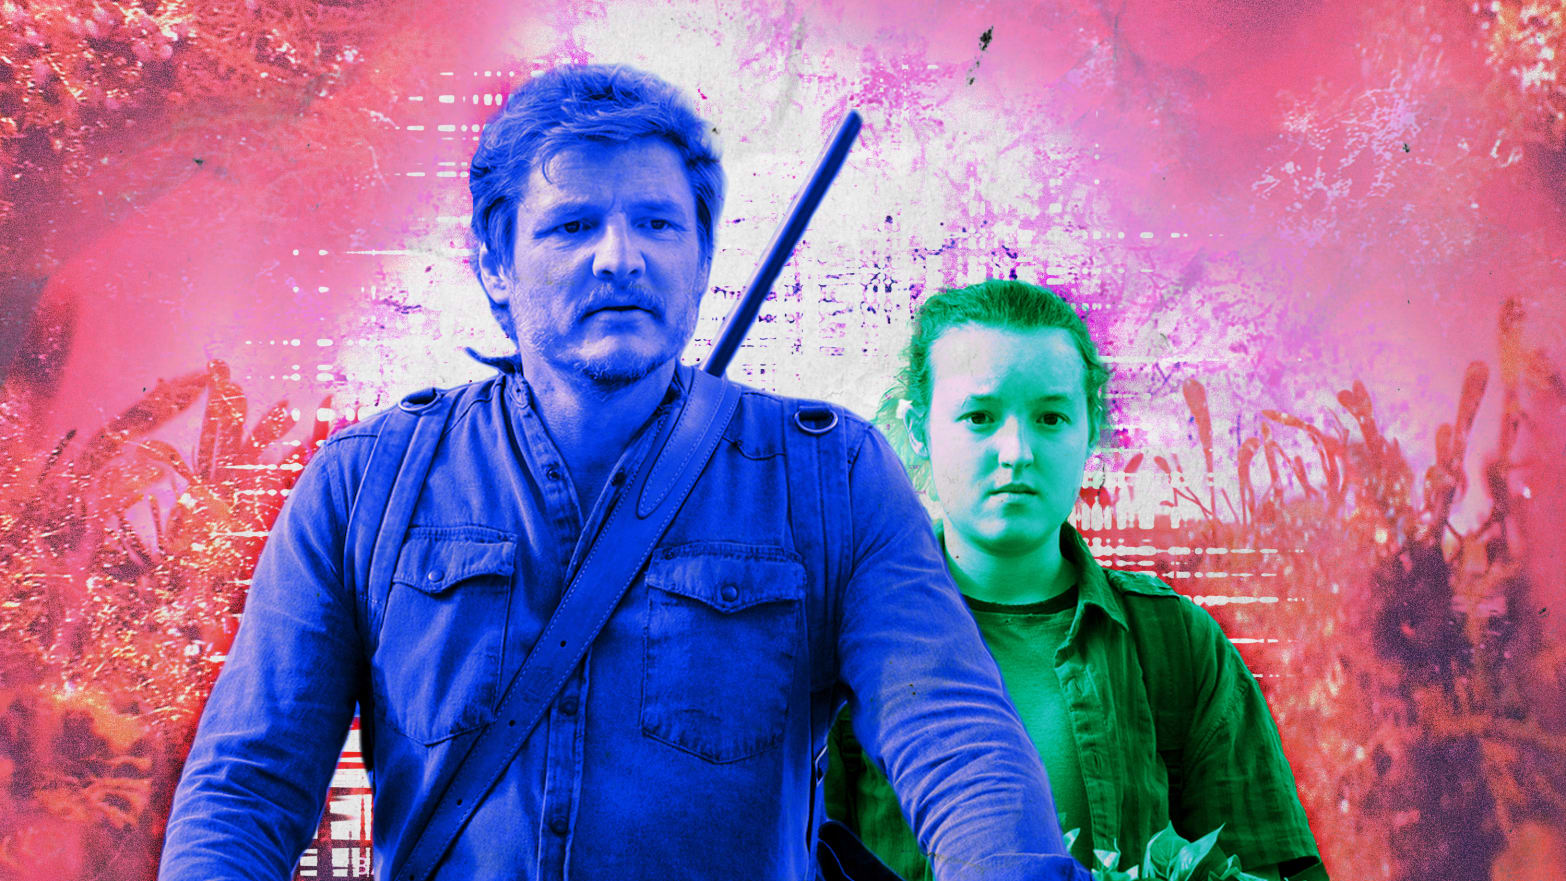 The Last of Us: How season 2 will address Ellie's big age jump